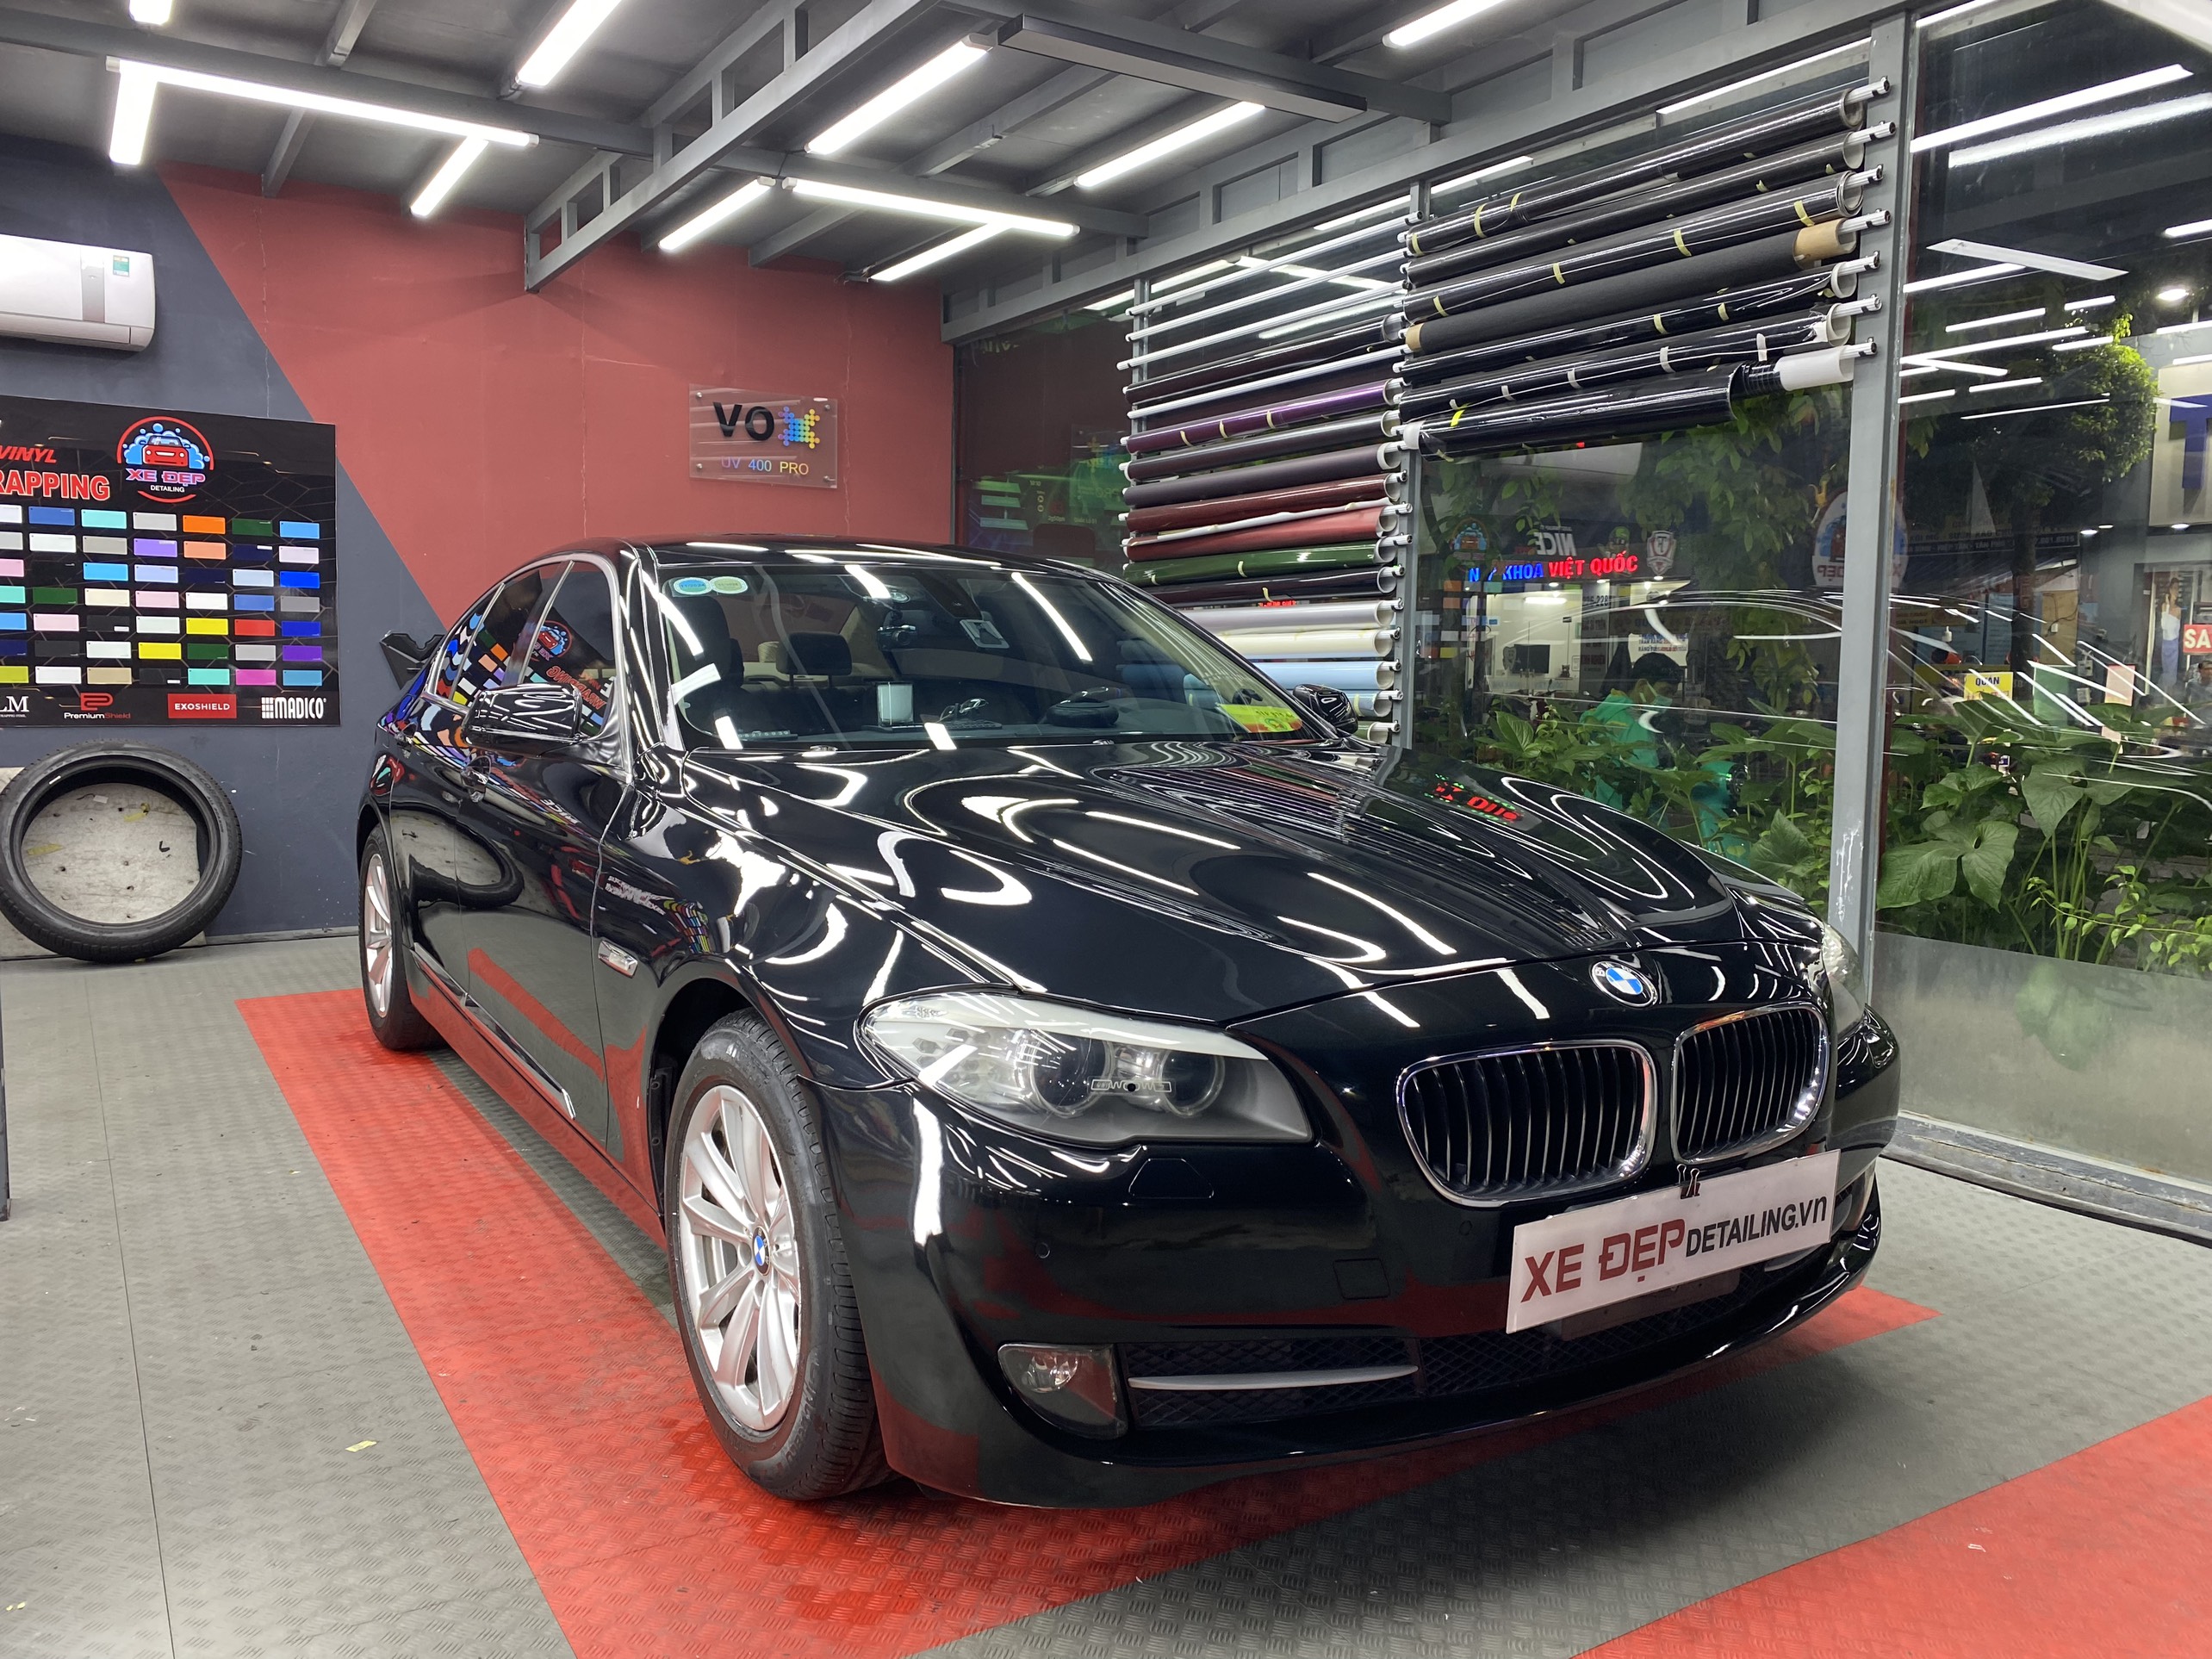 PHỤC HỒI LÀNG DA BMW 528I 14 TUỔI Tại Xe Đẹp Detailing